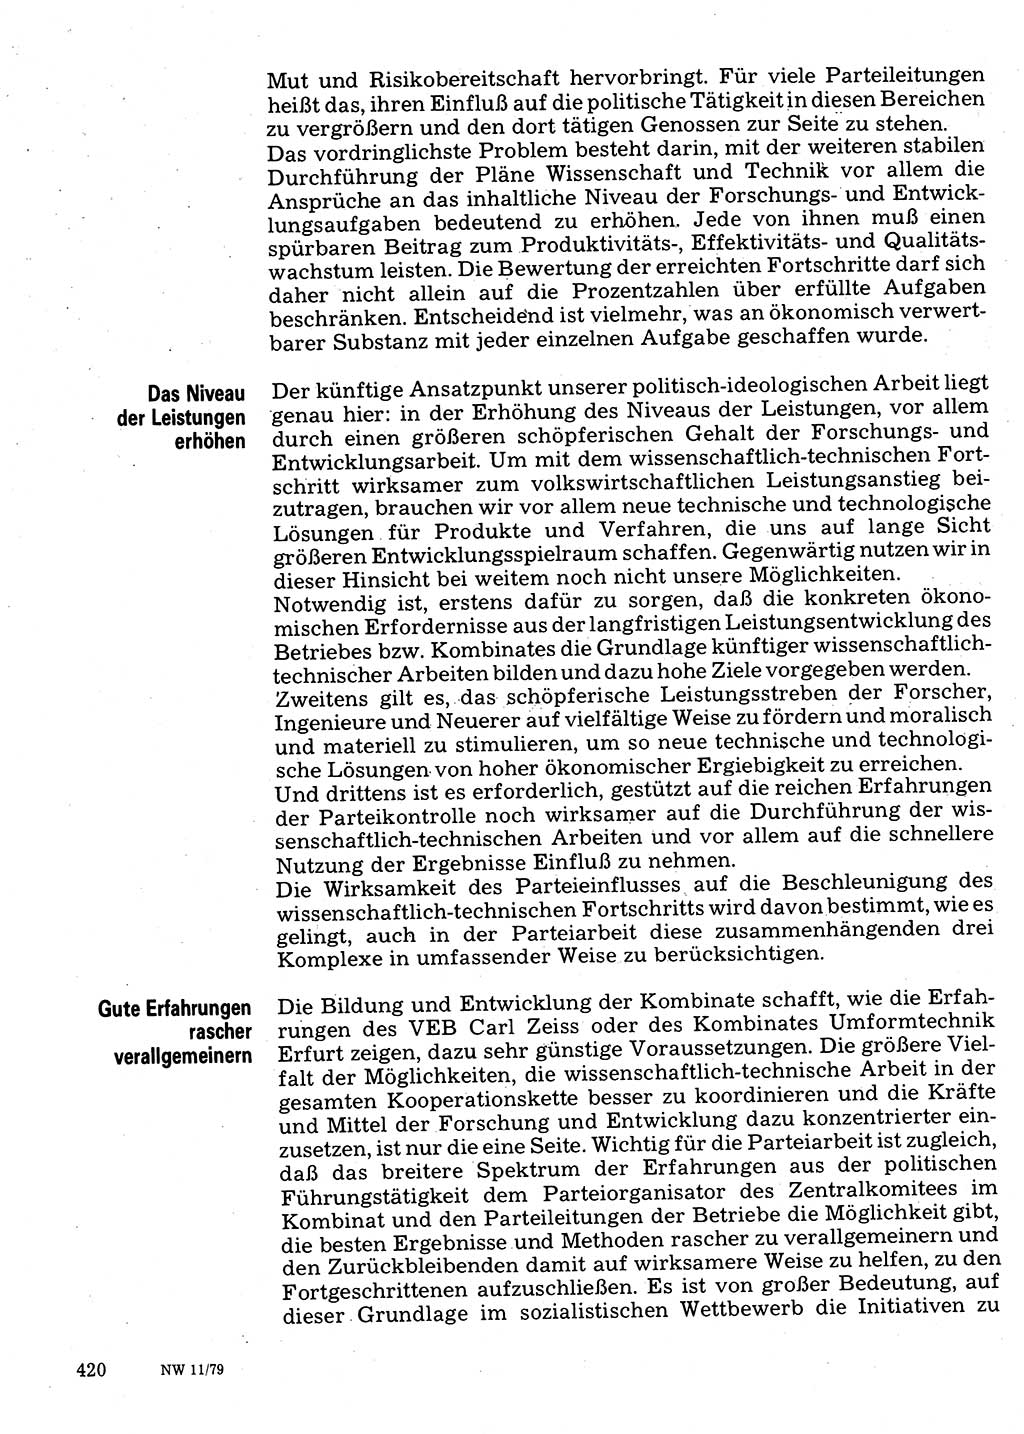 Neuer Weg (NW), Organ des Zentralkomitees (ZK) der SED (Sozialistische Einheitspartei Deutschlands) für Fragen des Parteilebens, 34. Jahrgang [Deutsche Demokratische Republik (DDR)] 1979, Seite 420 (NW ZK SED DDR 1979, S. 420)